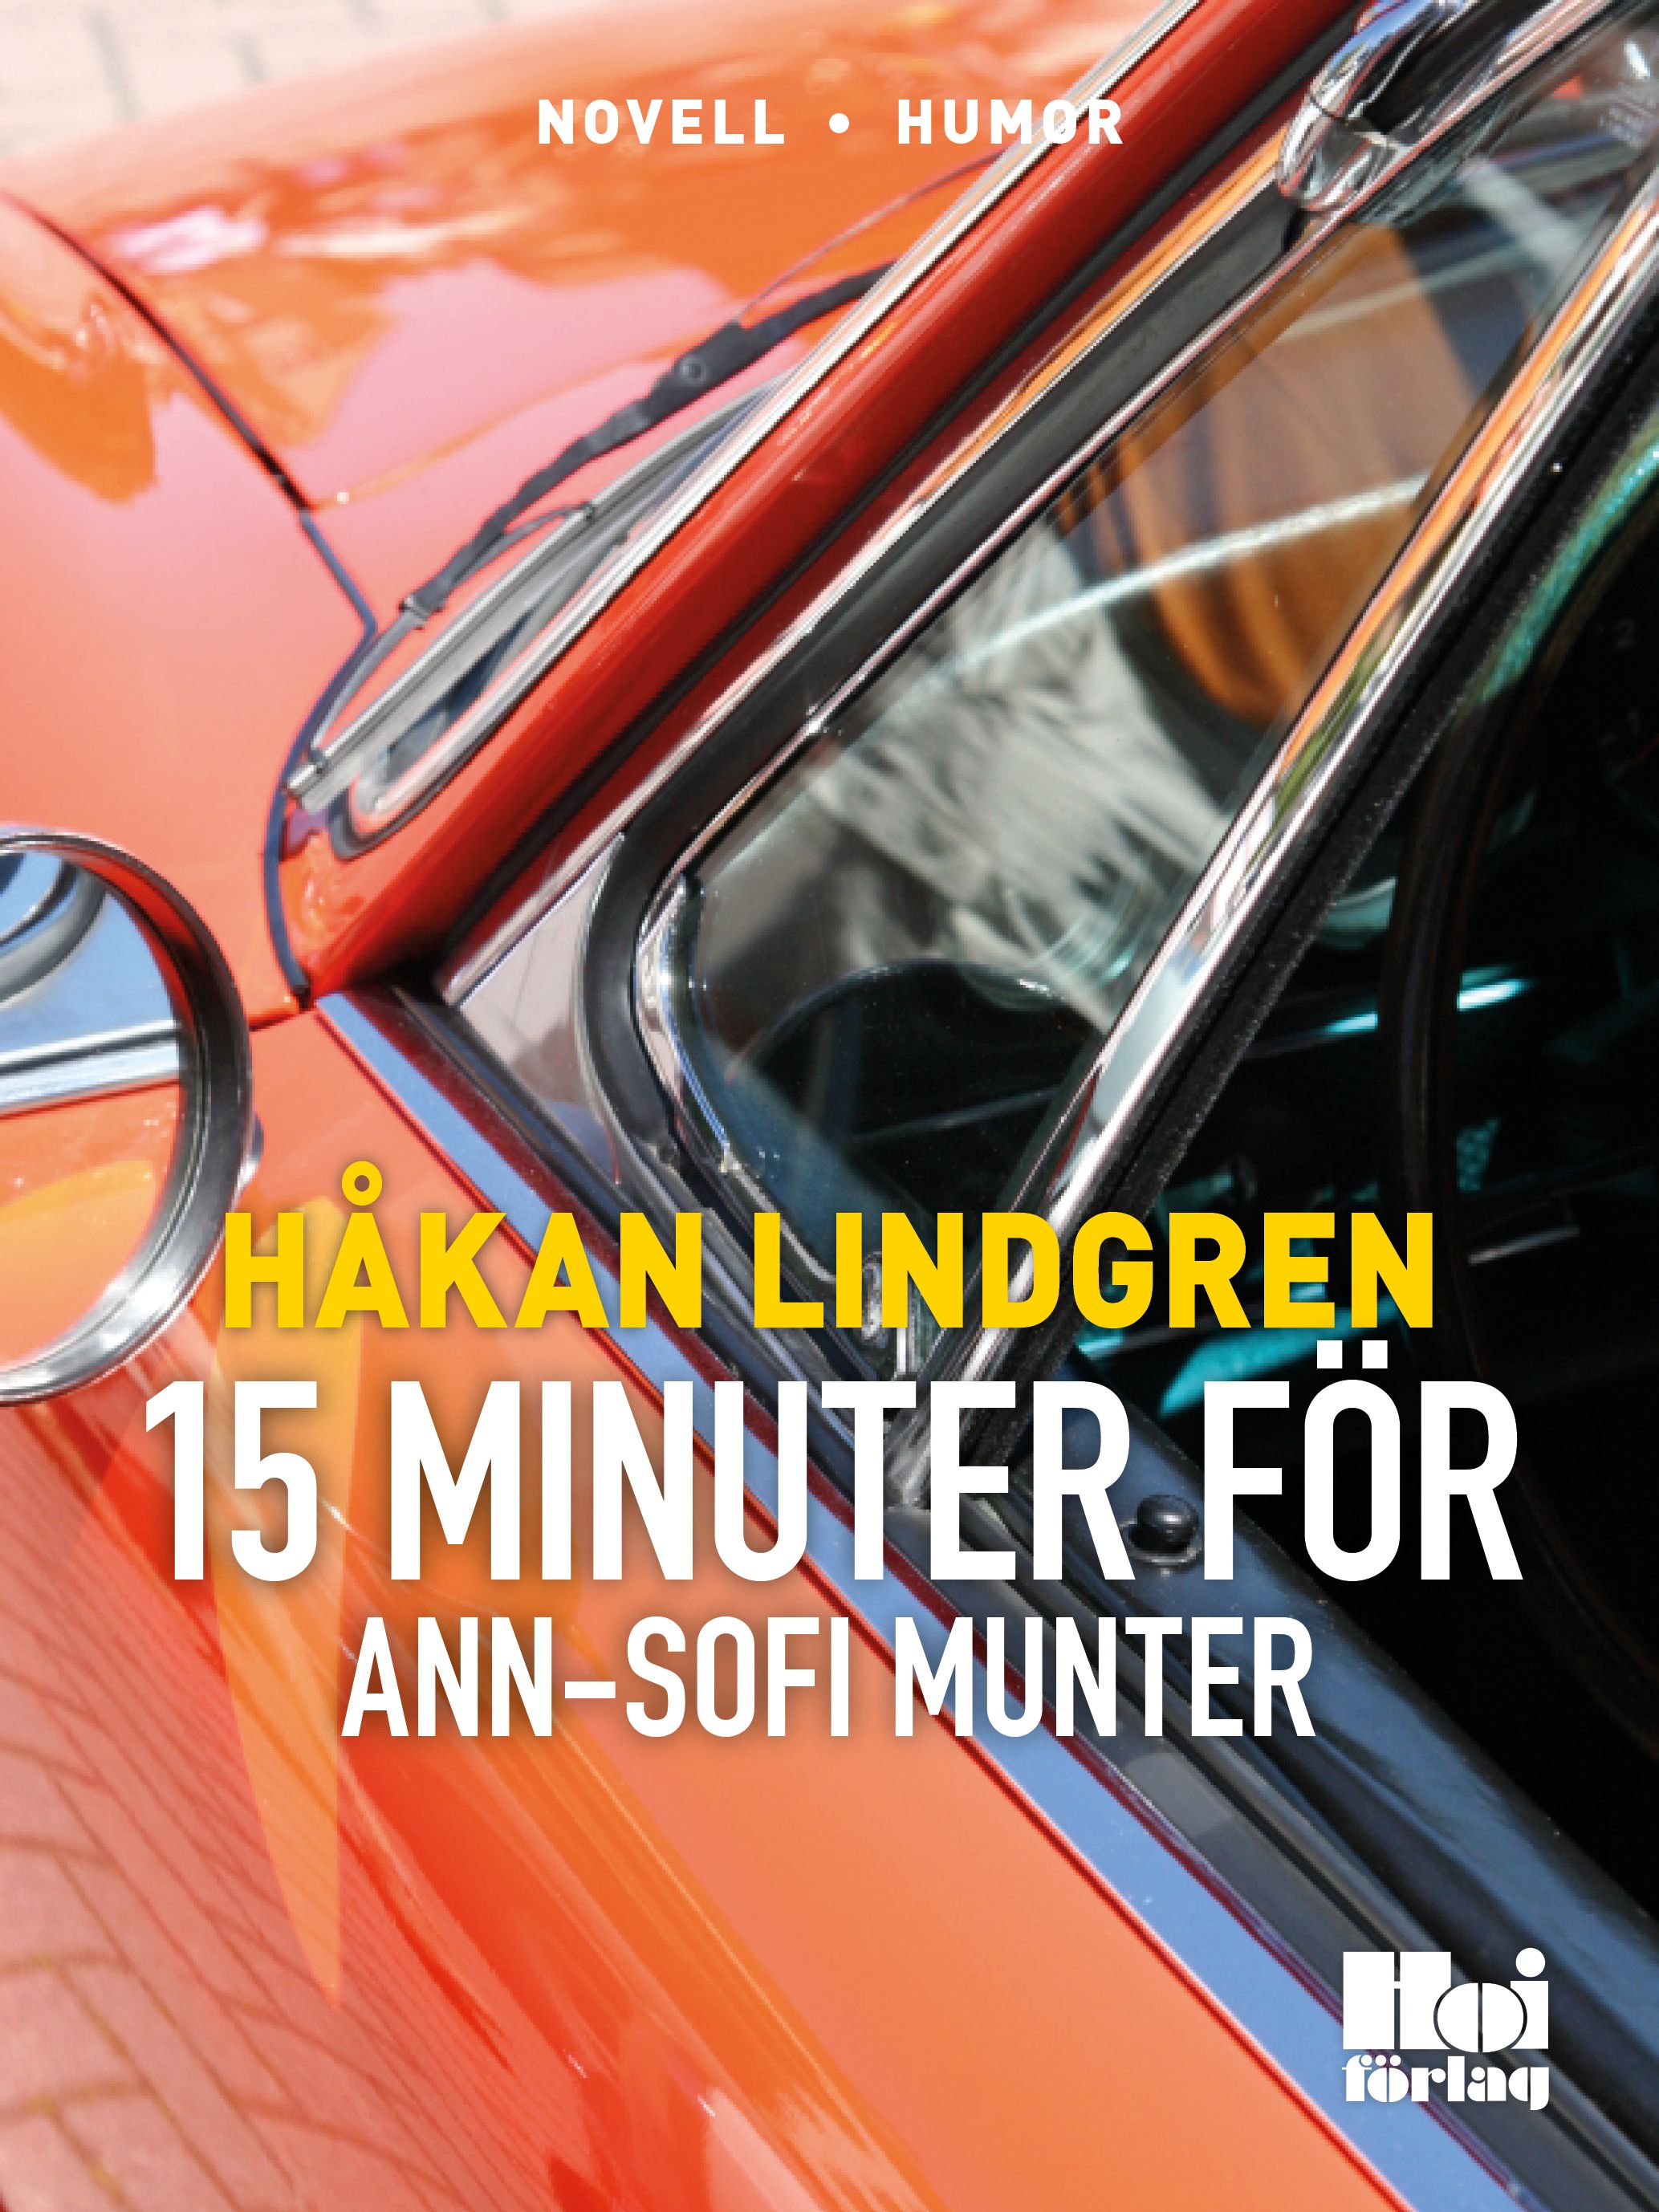 Femton minuter för Ann-Sofie Munter, e-bok av Håkan Lindgren